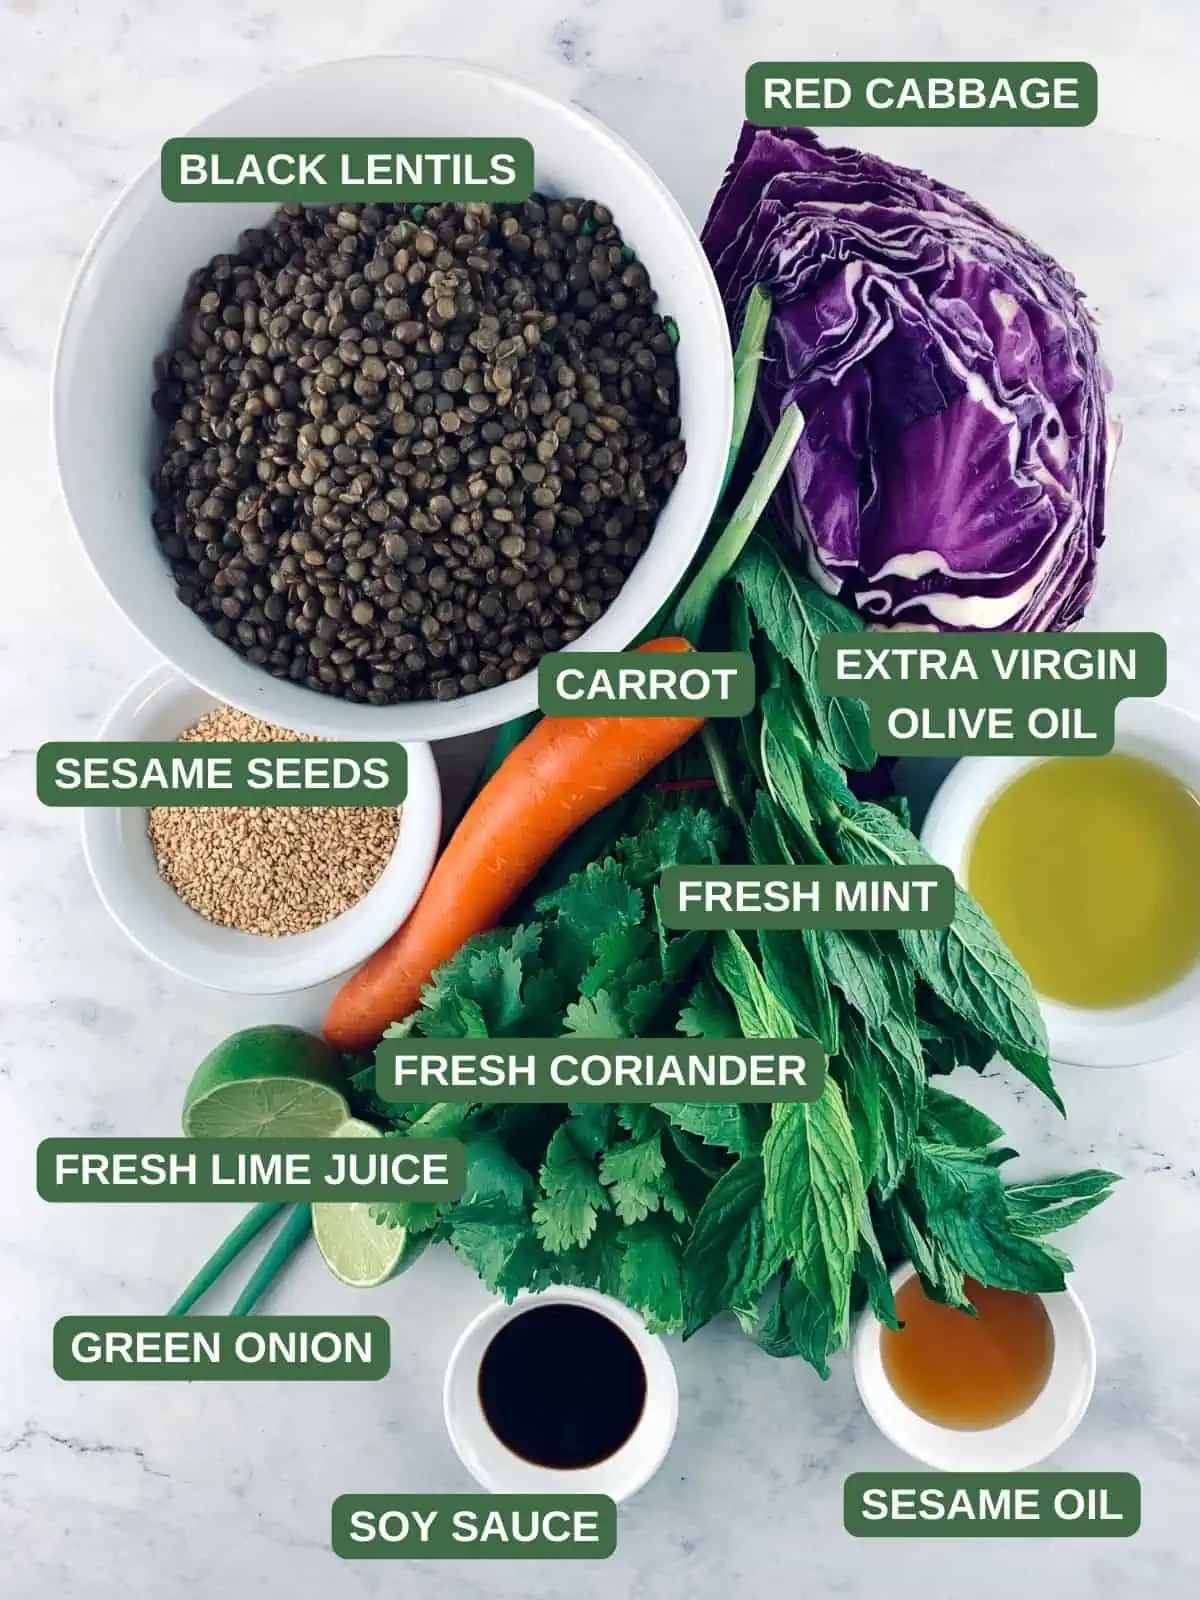 Labelled ingredients needed to make a black lentil salad.